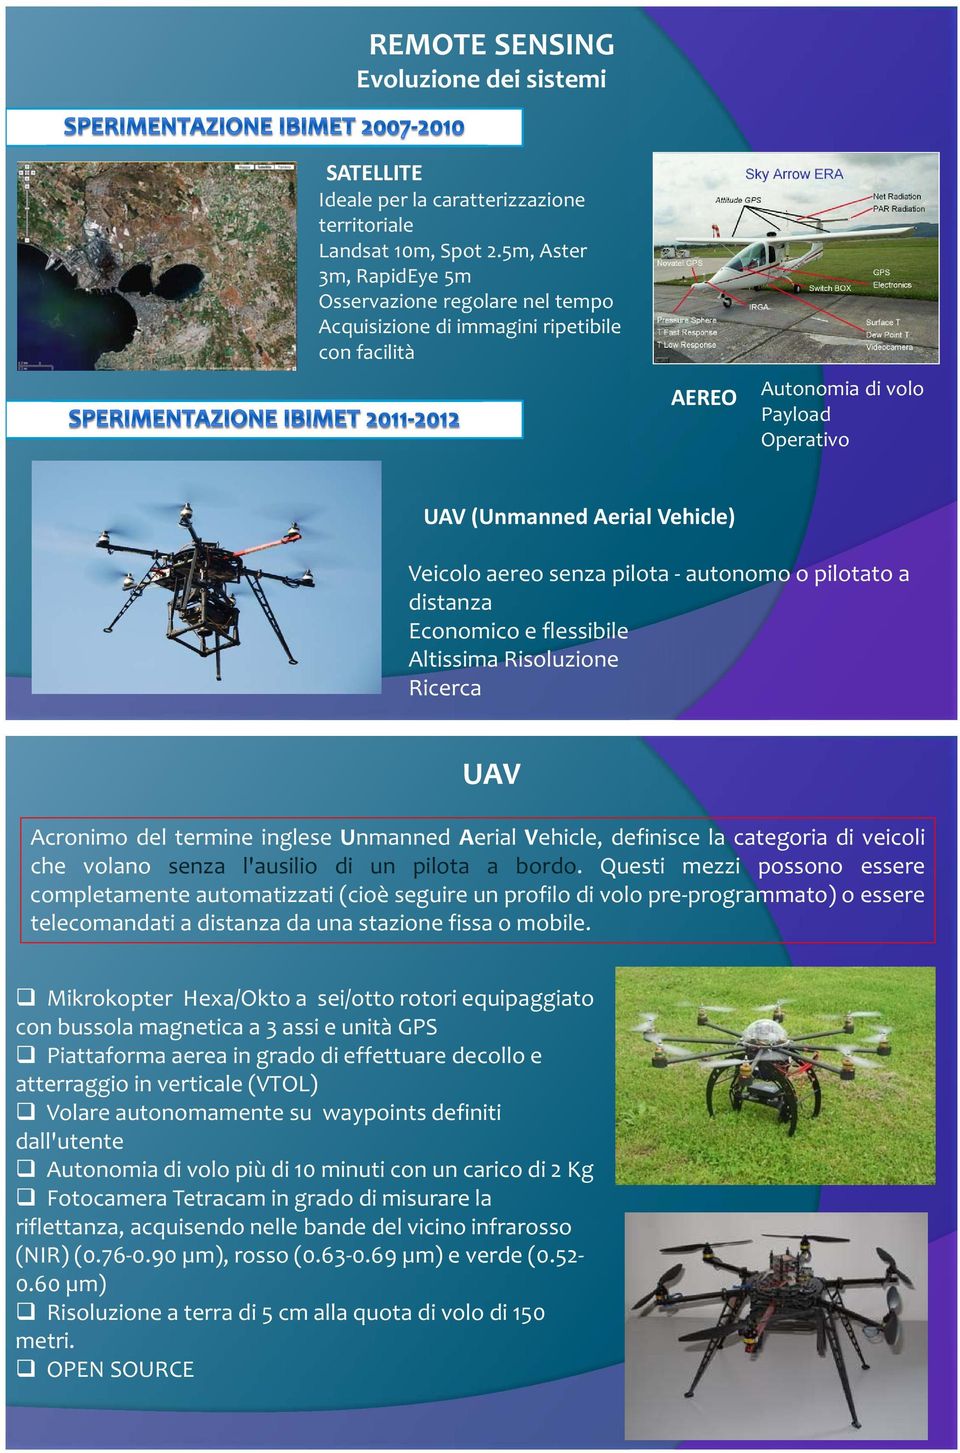 pilota - autonomo o pilotato a distanza Economico e flessibile Altissima Risoluzione Ricerca UAV Acronimo del termine inglese Unmanned Aerial Vehicle, definisce la categoria di veicoli che volano